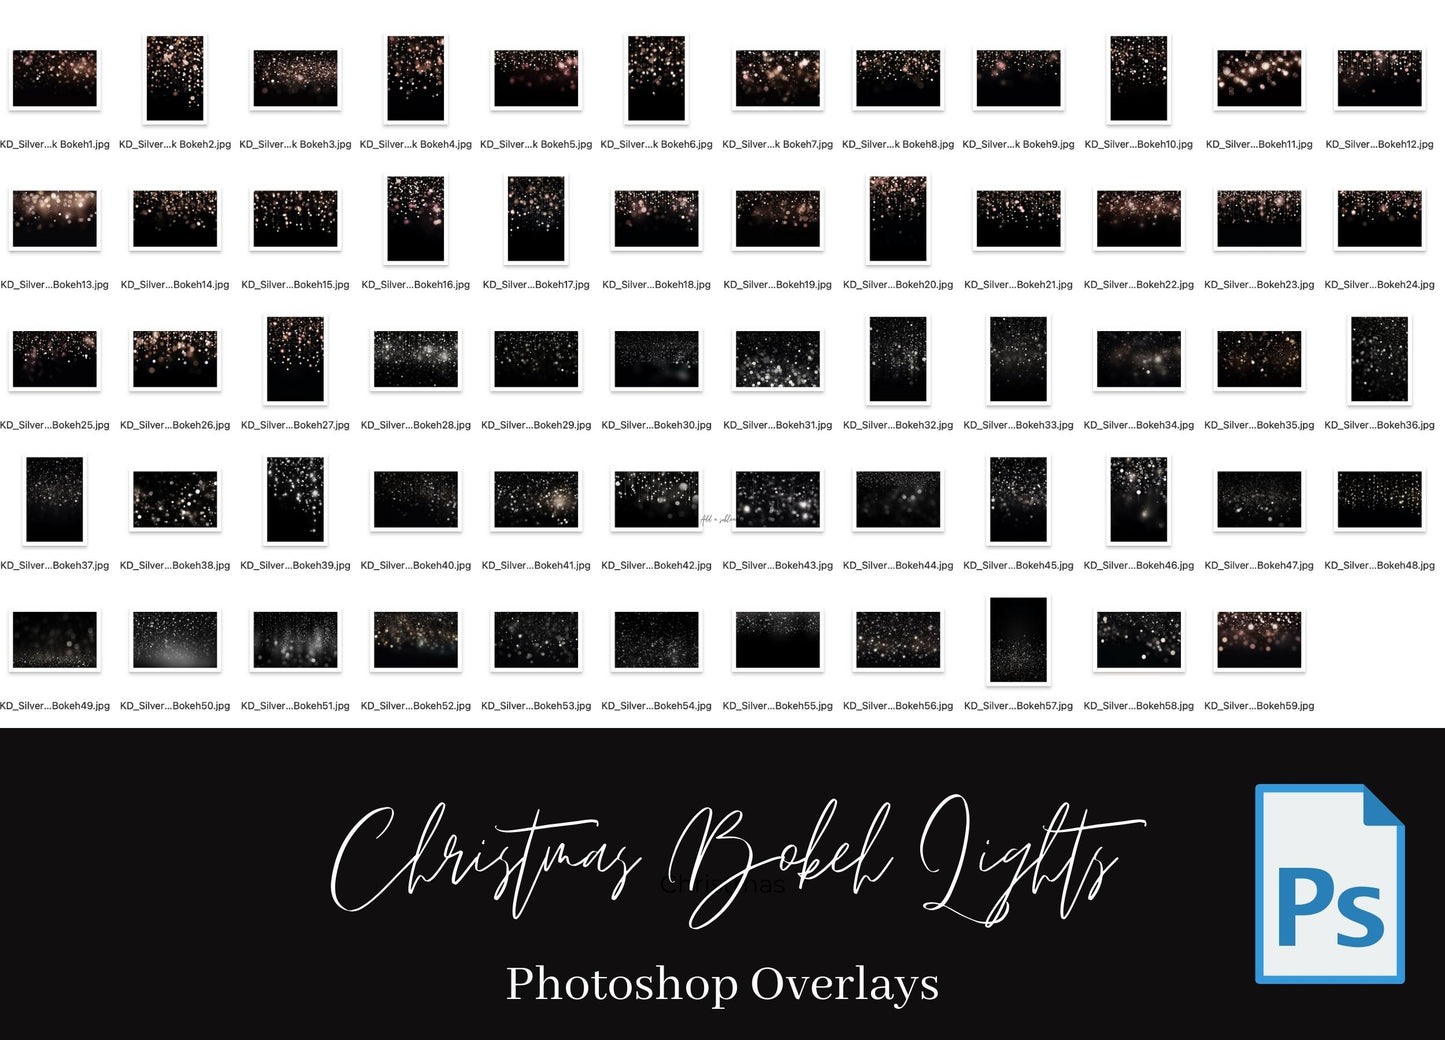 Christmas Bokeh Lights Photo Overlays